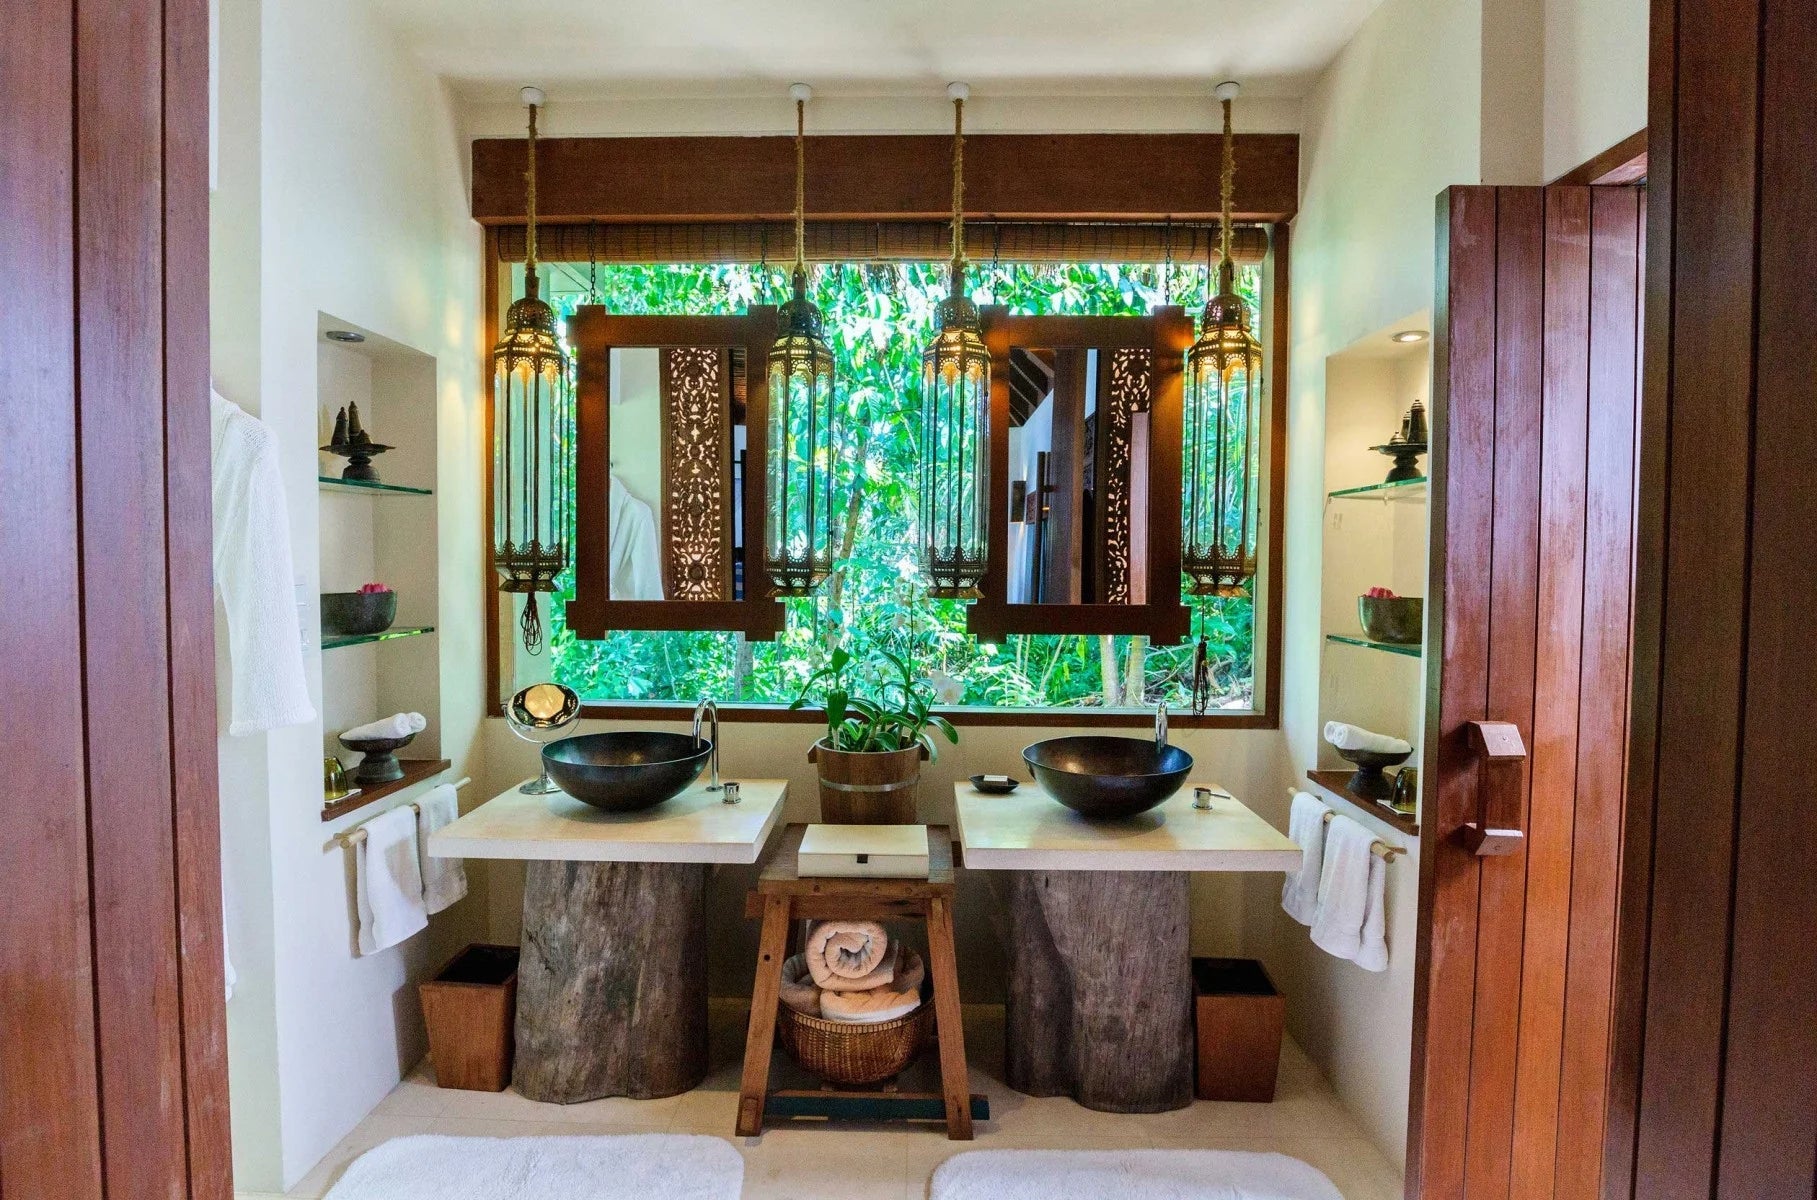 Banana Leaves, Gold and Teak: Caribbean Style Bathroom Décor